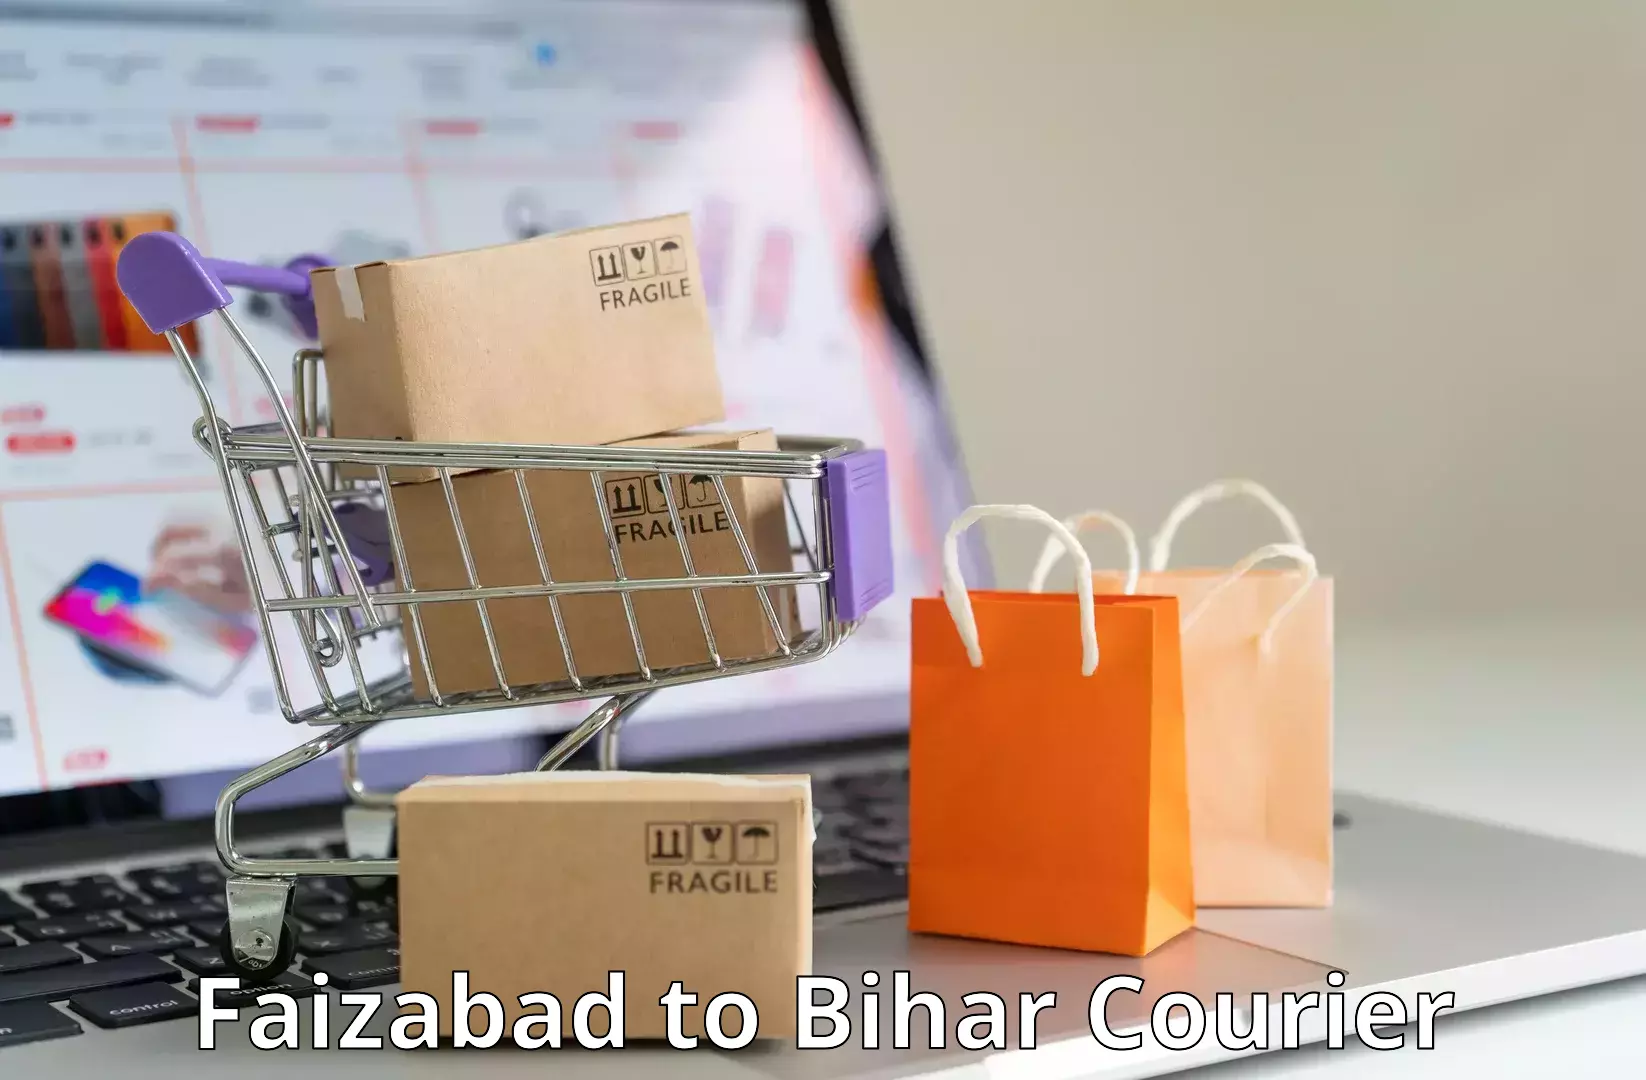 Professional parcel services Faizabad to Goh Aurangabad